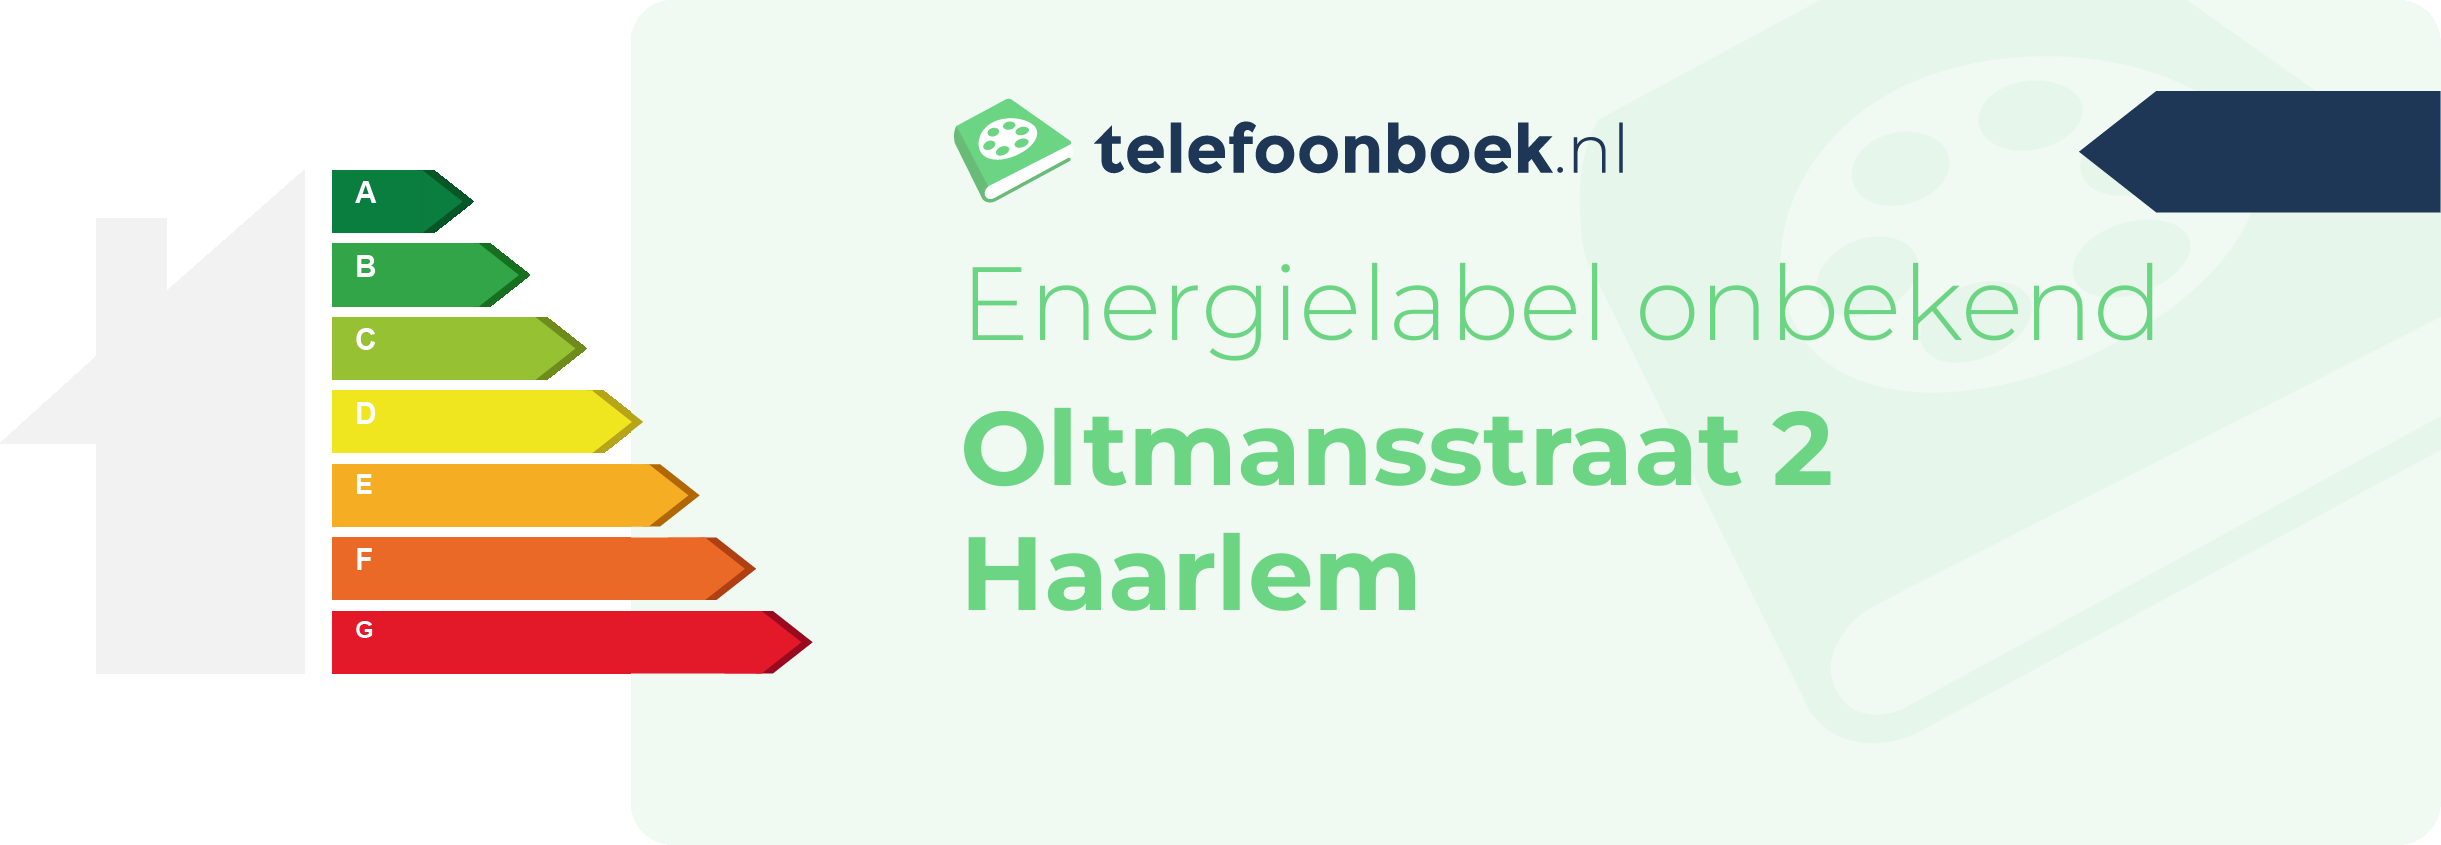 Energielabel Oltmansstraat 2 Haarlem